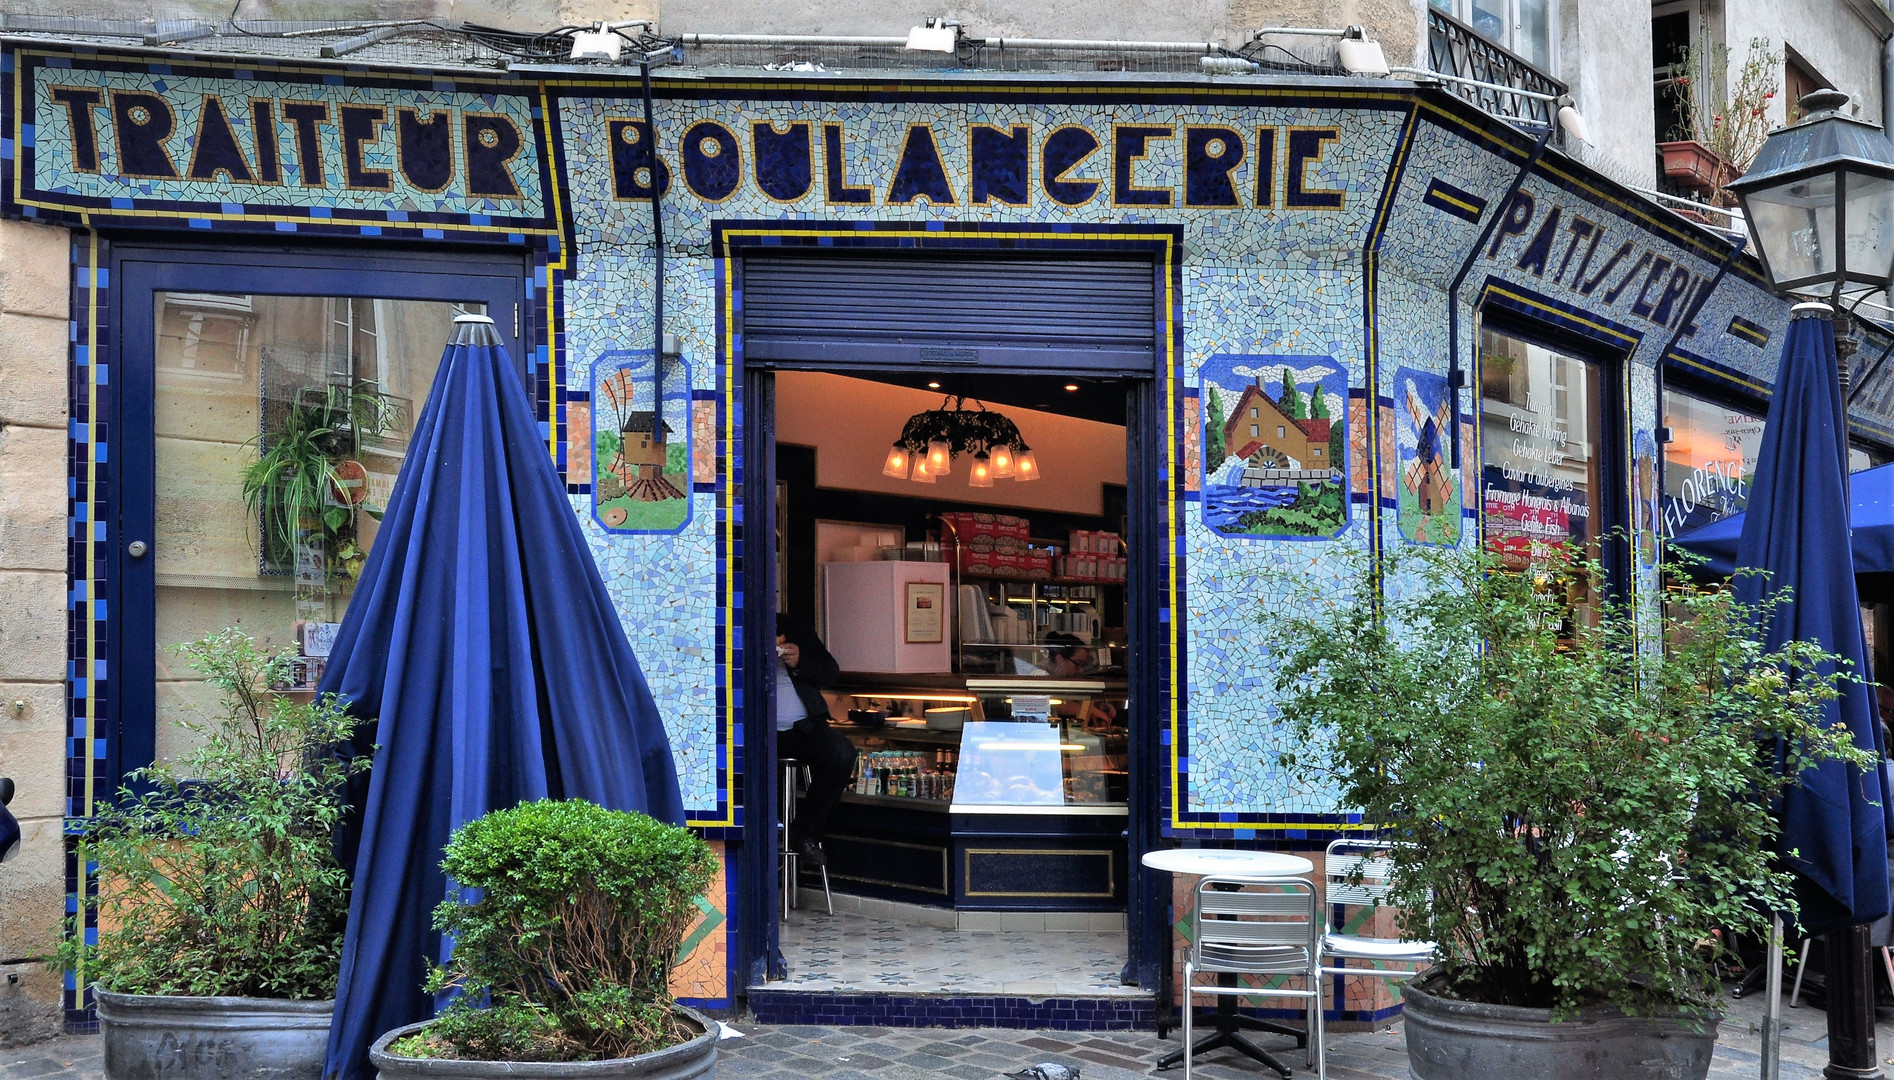  Boulangerie rue des Ecouffes